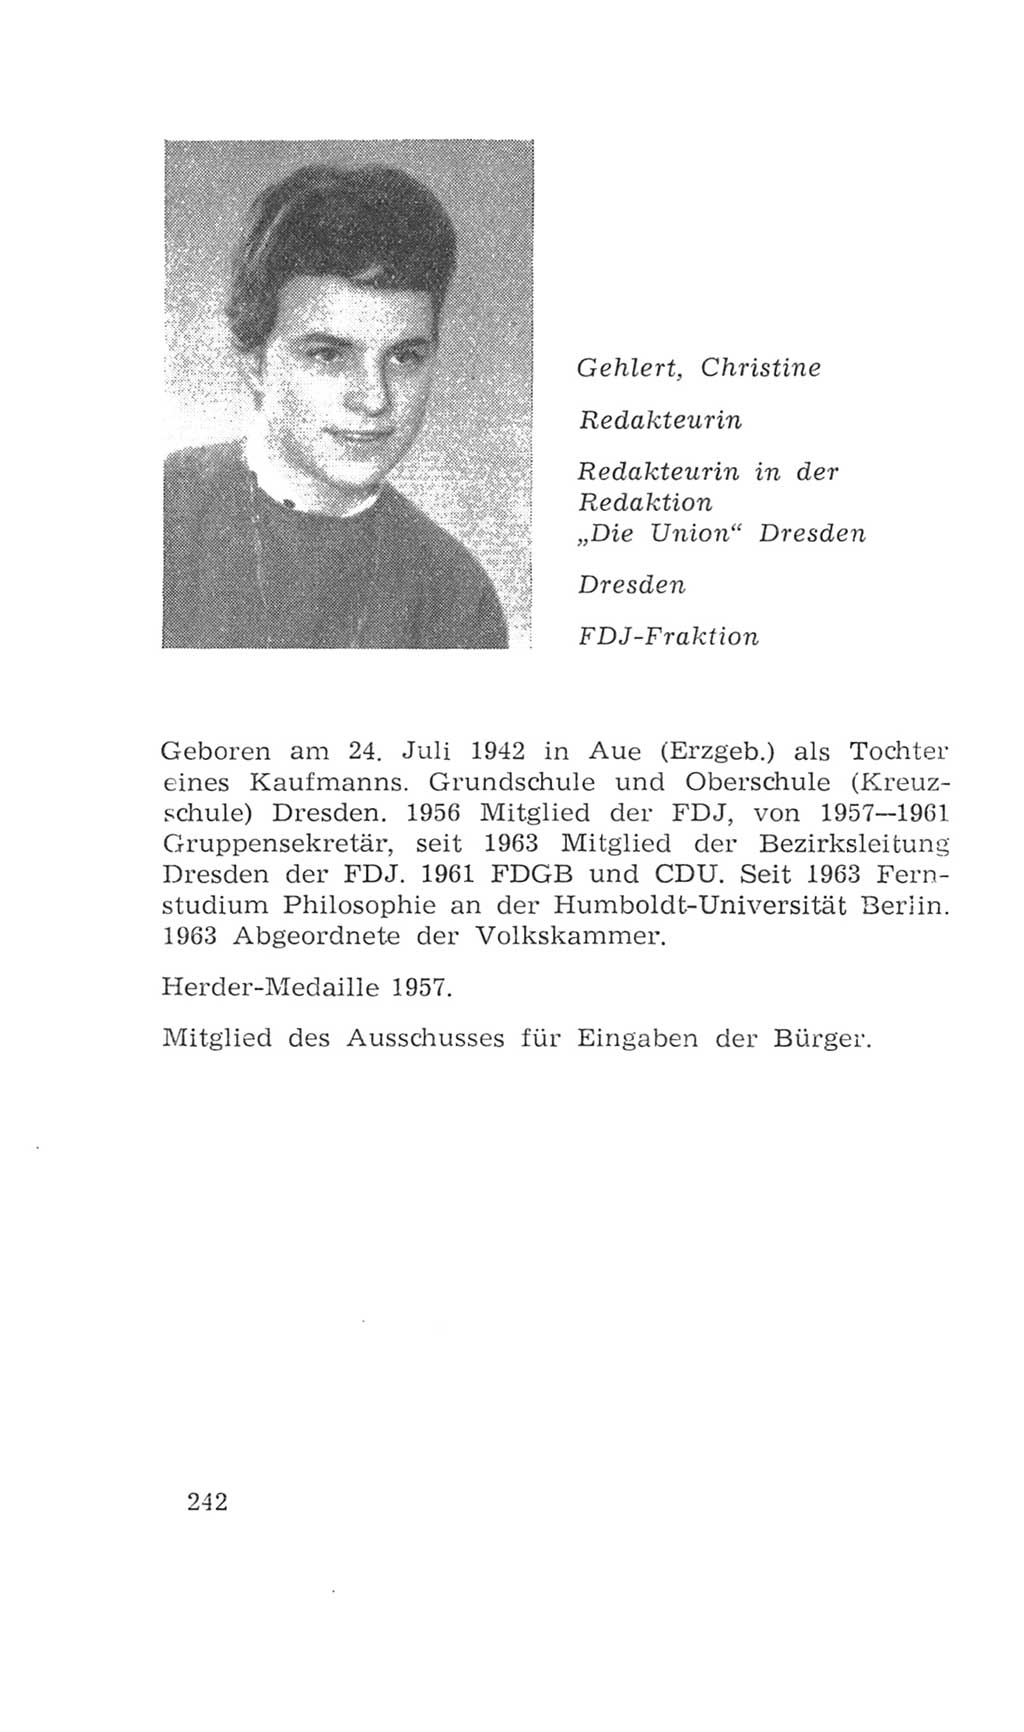 Volkskammer (VK) der Deutschen Demokratischen Republik (DDR), 4. Wahlperiode 1963-1967, Seite 242 (VK. DDR 4. WP. 1963-1967, S. 242)